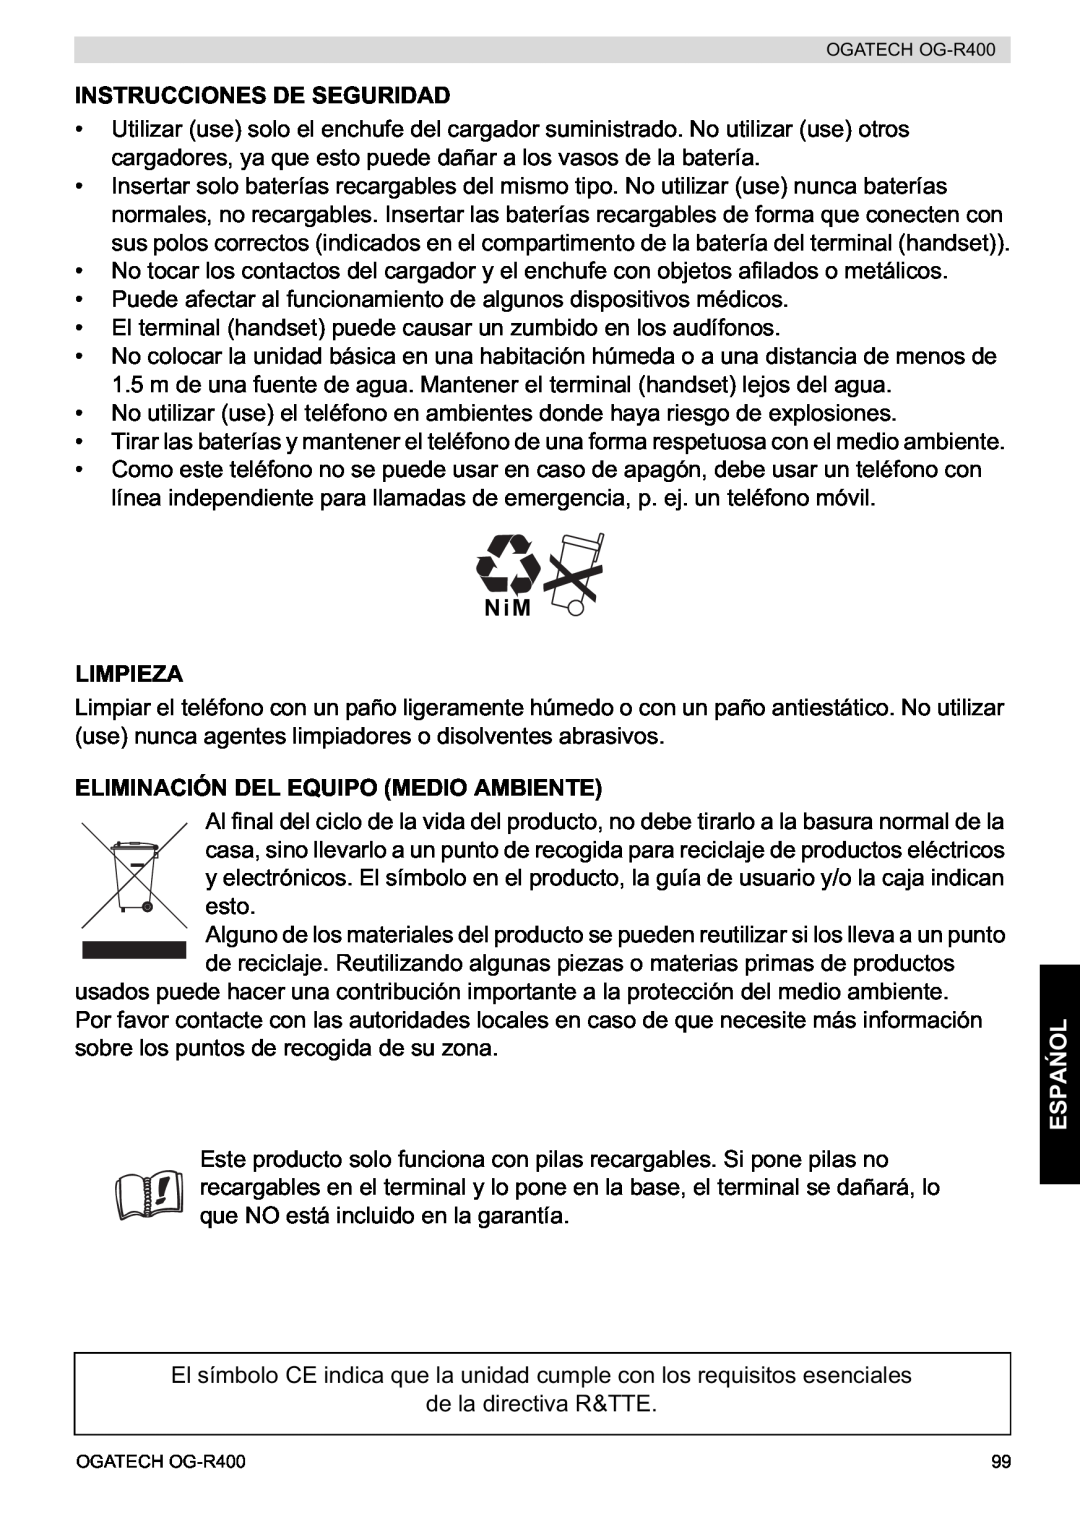 Topcom OG-R400 manual Instrucciones De Seguridad, NiM LIMPIEZA, Eliminación Del Equipo Medio Ambiente, Espa 